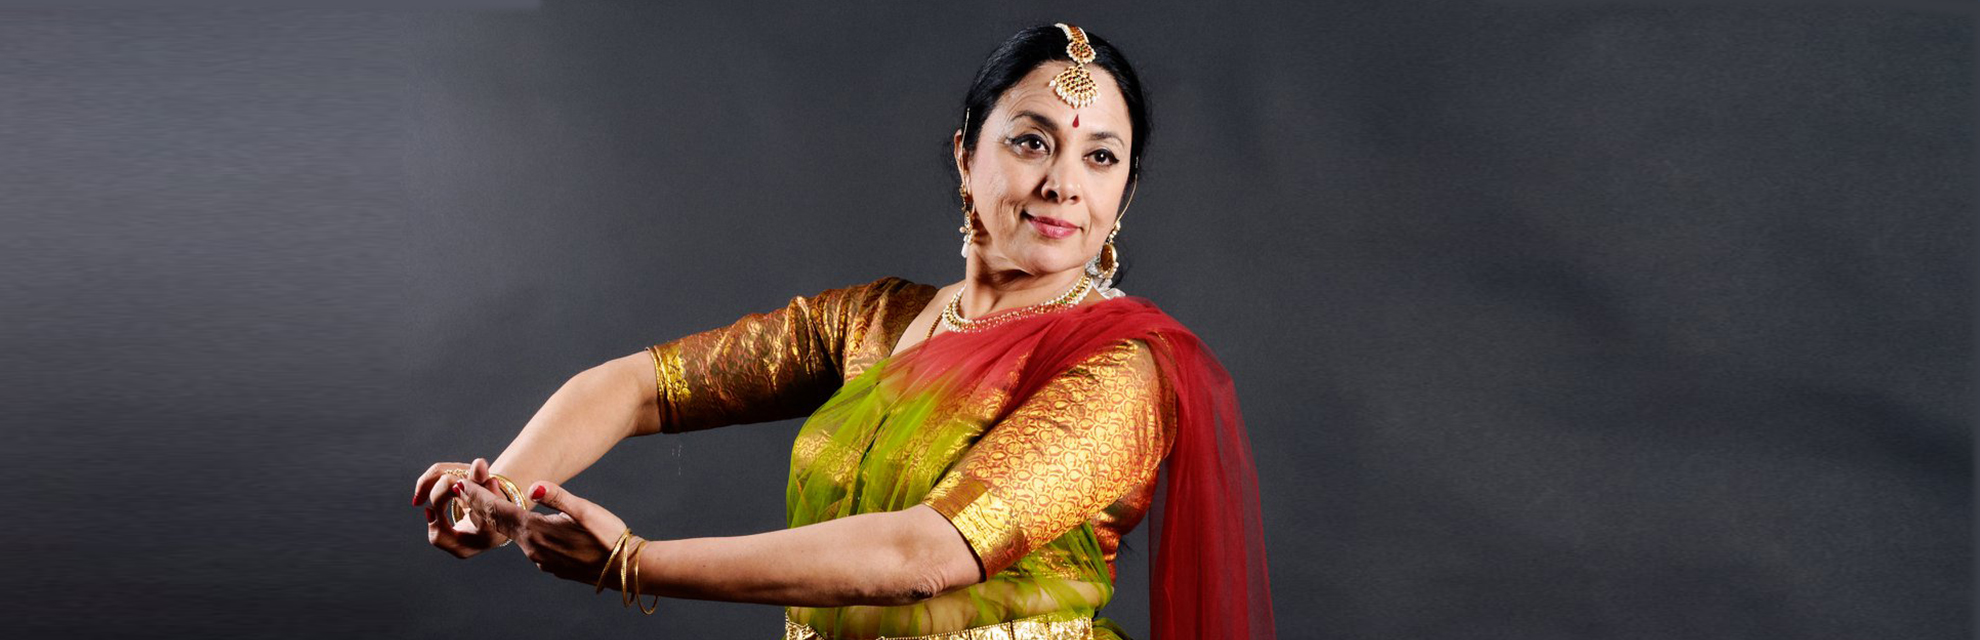 La danseuse de kathak, le Dr Malini Ranganathan, est l'ambassadrice culturelle de l'Inde dans le monde